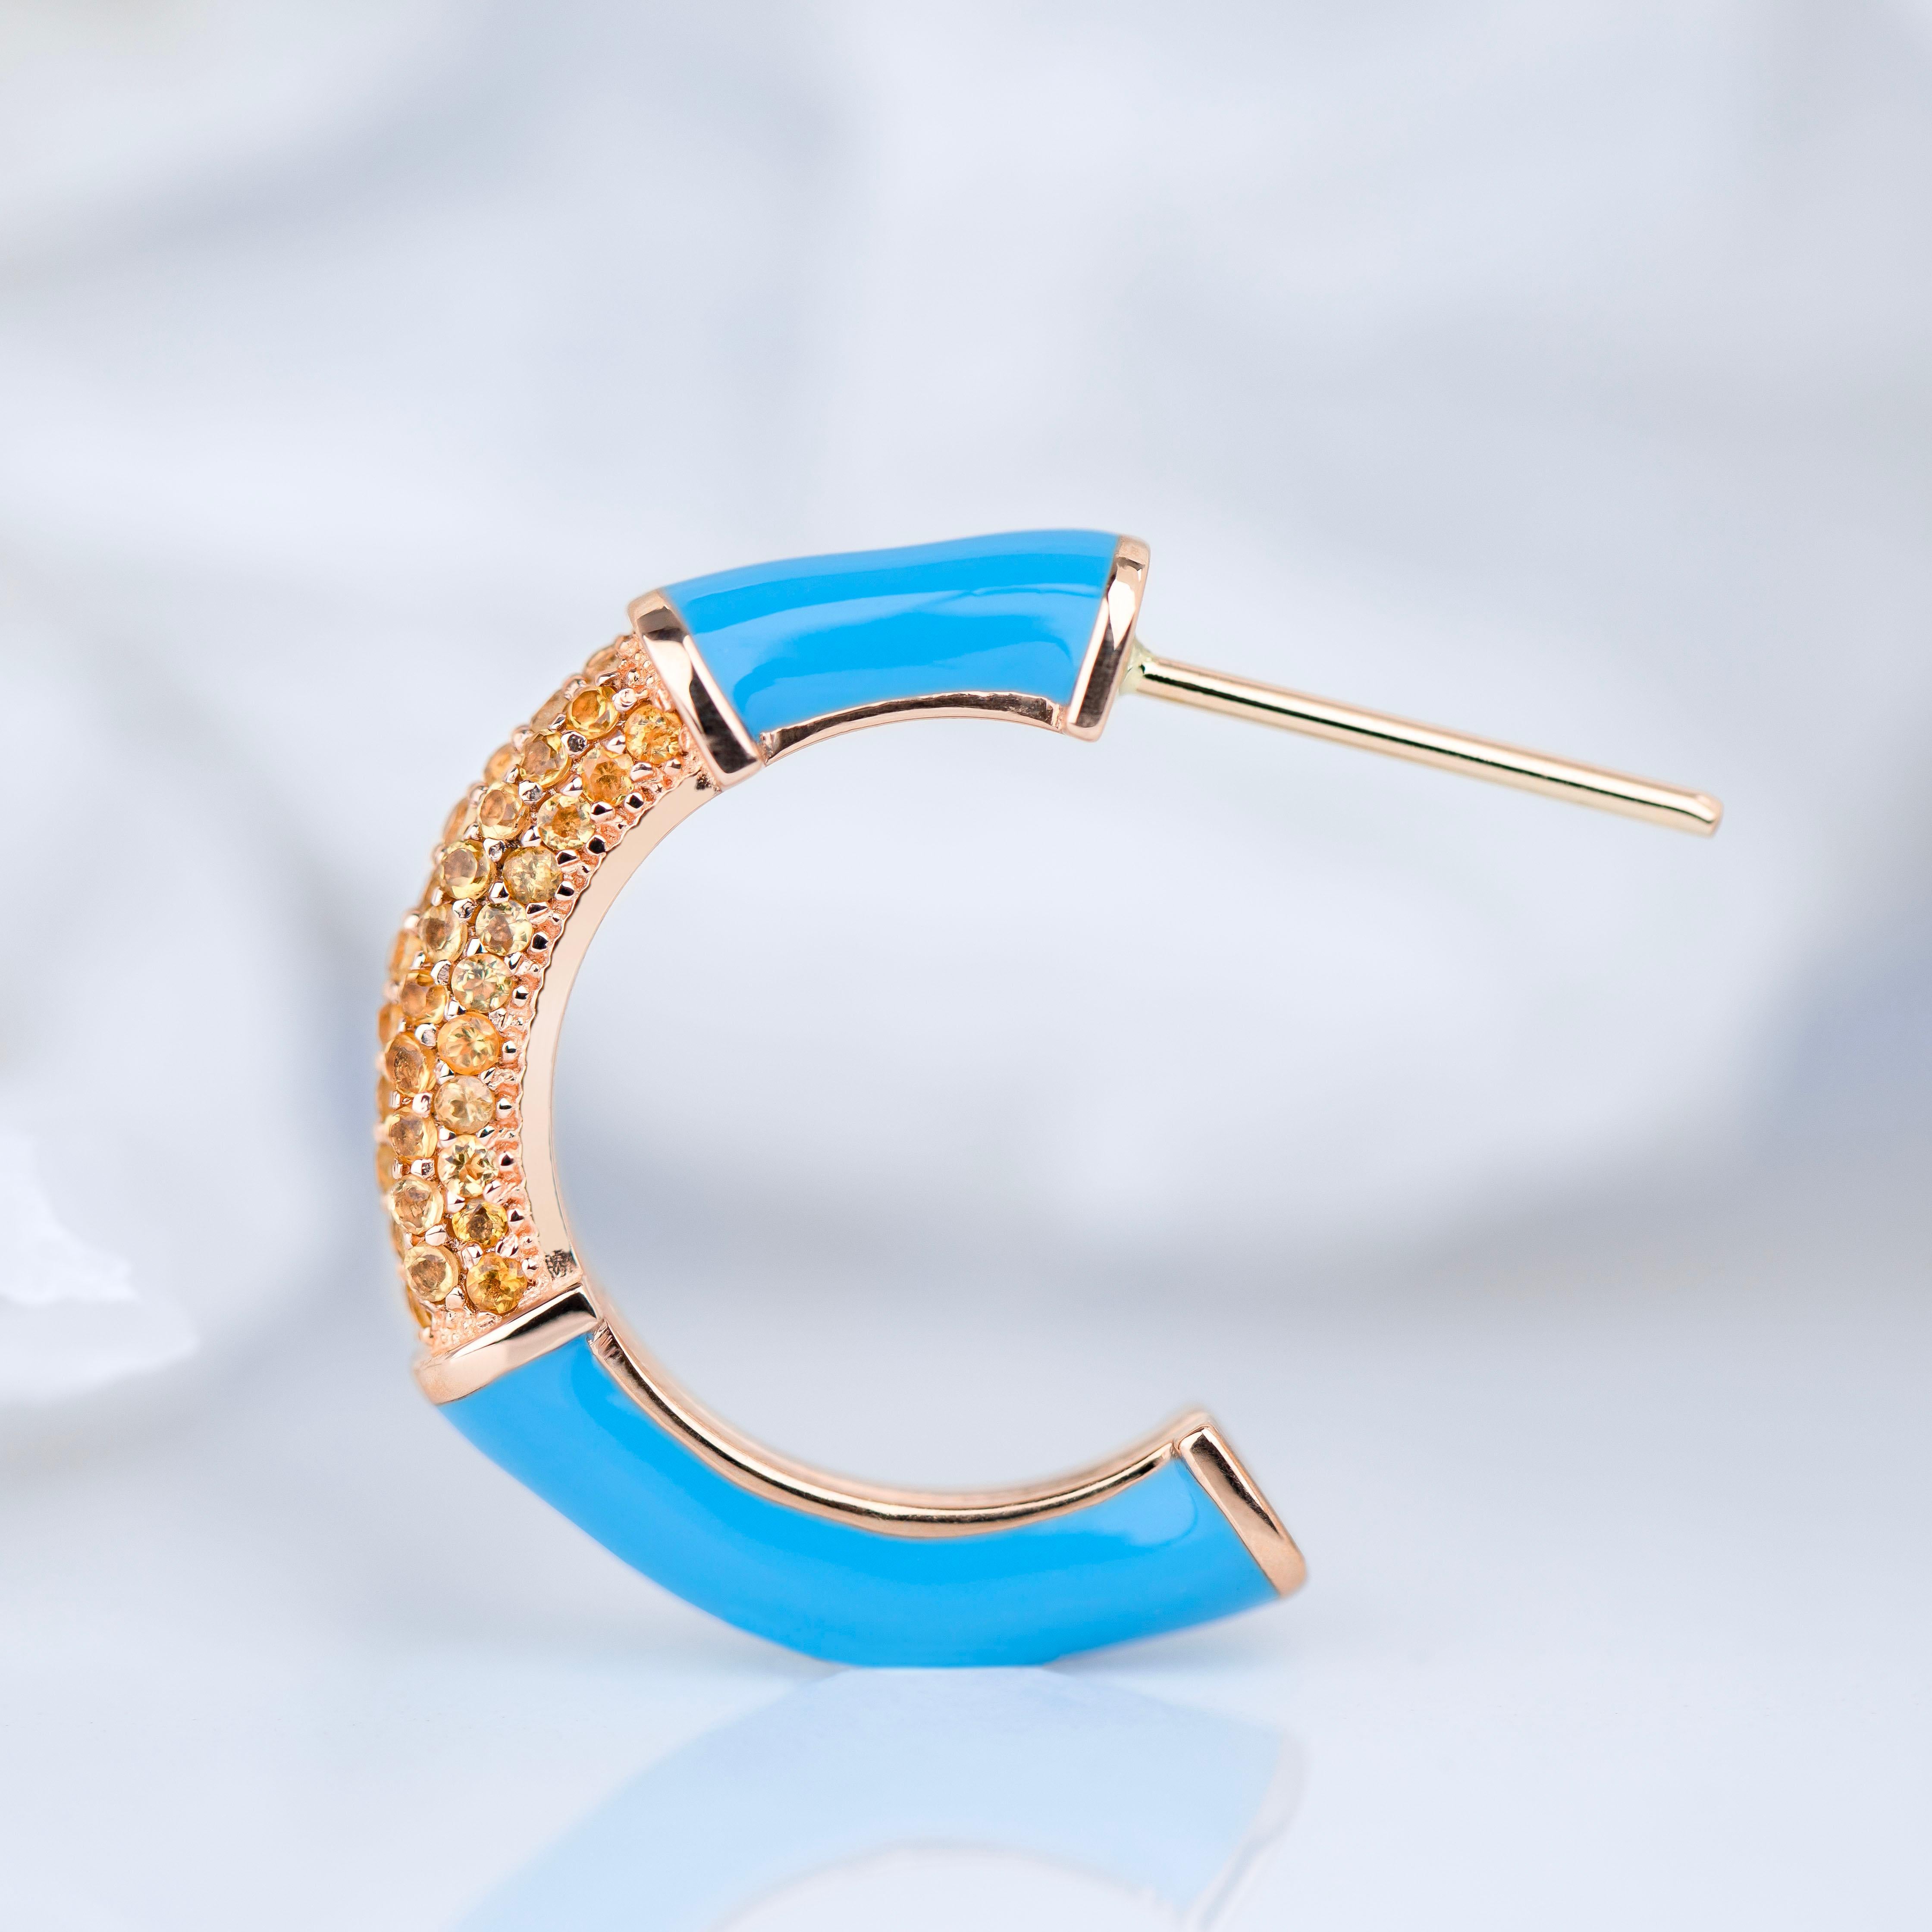 Art Deco Stil Design Goldohrring mit Citrin  Stein, Hummelfarben-Ohrring

Dieser Ring wurde aus hochwertigen MATERIALEN und in hervorragender Handarbeit hergestellt. Ich garantiere für die Qualitätssicherung meiner Handarbeit und meiner MATERIALIEN.